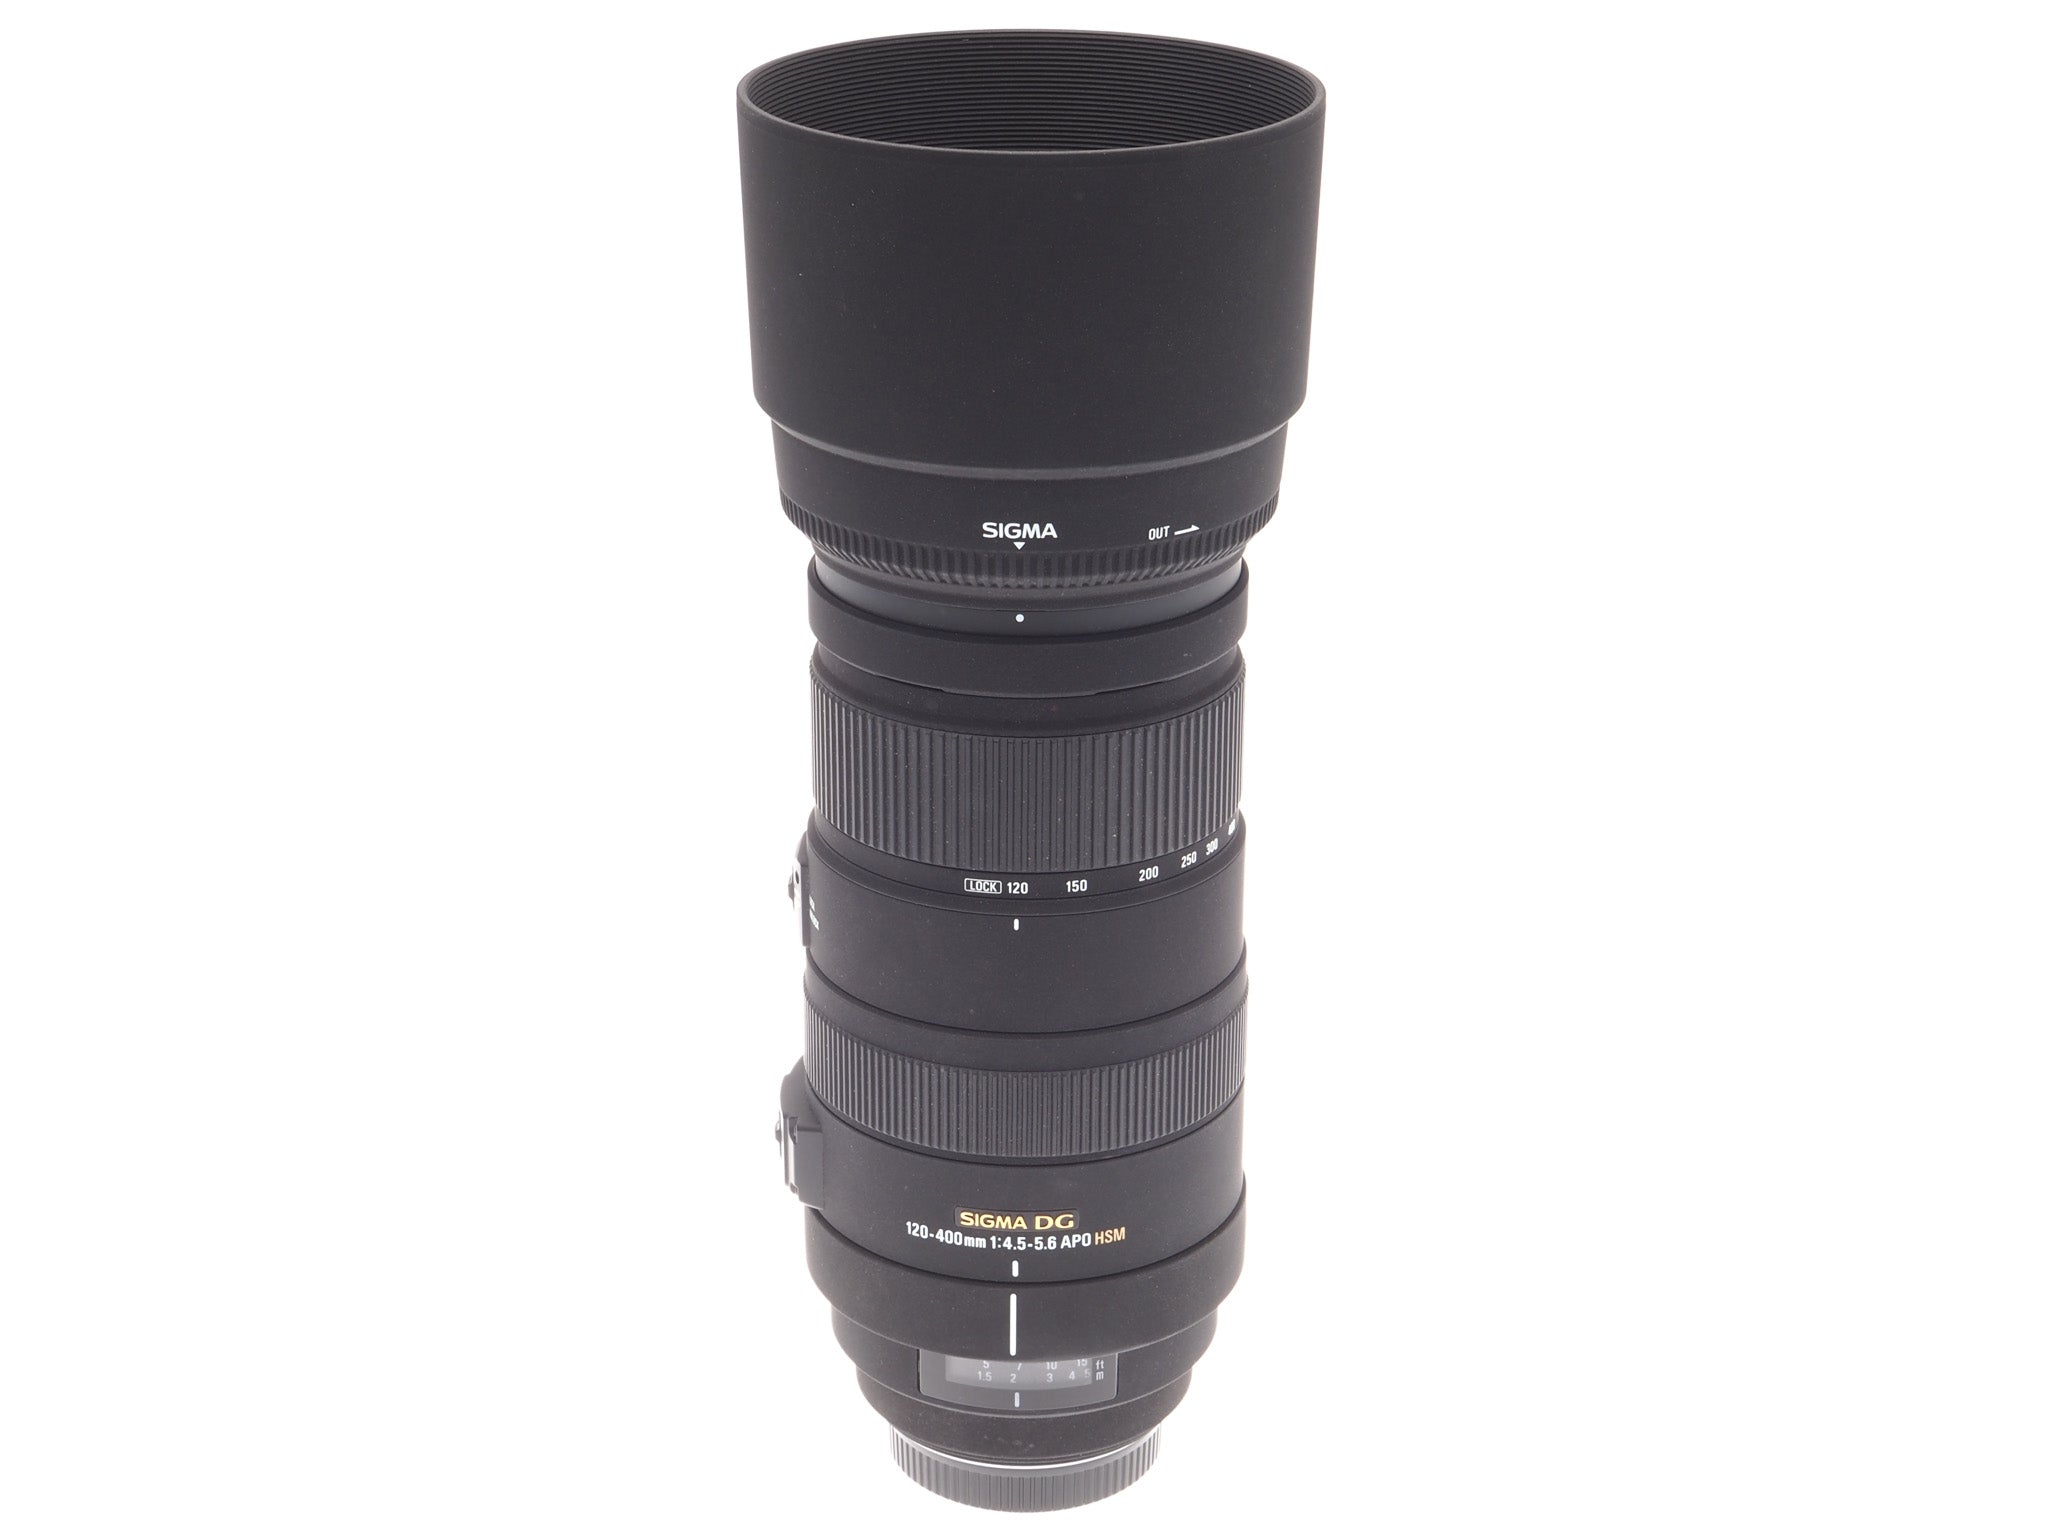 Sigma 120-400mm f4.5-5.6 APO DG HSM - Lens